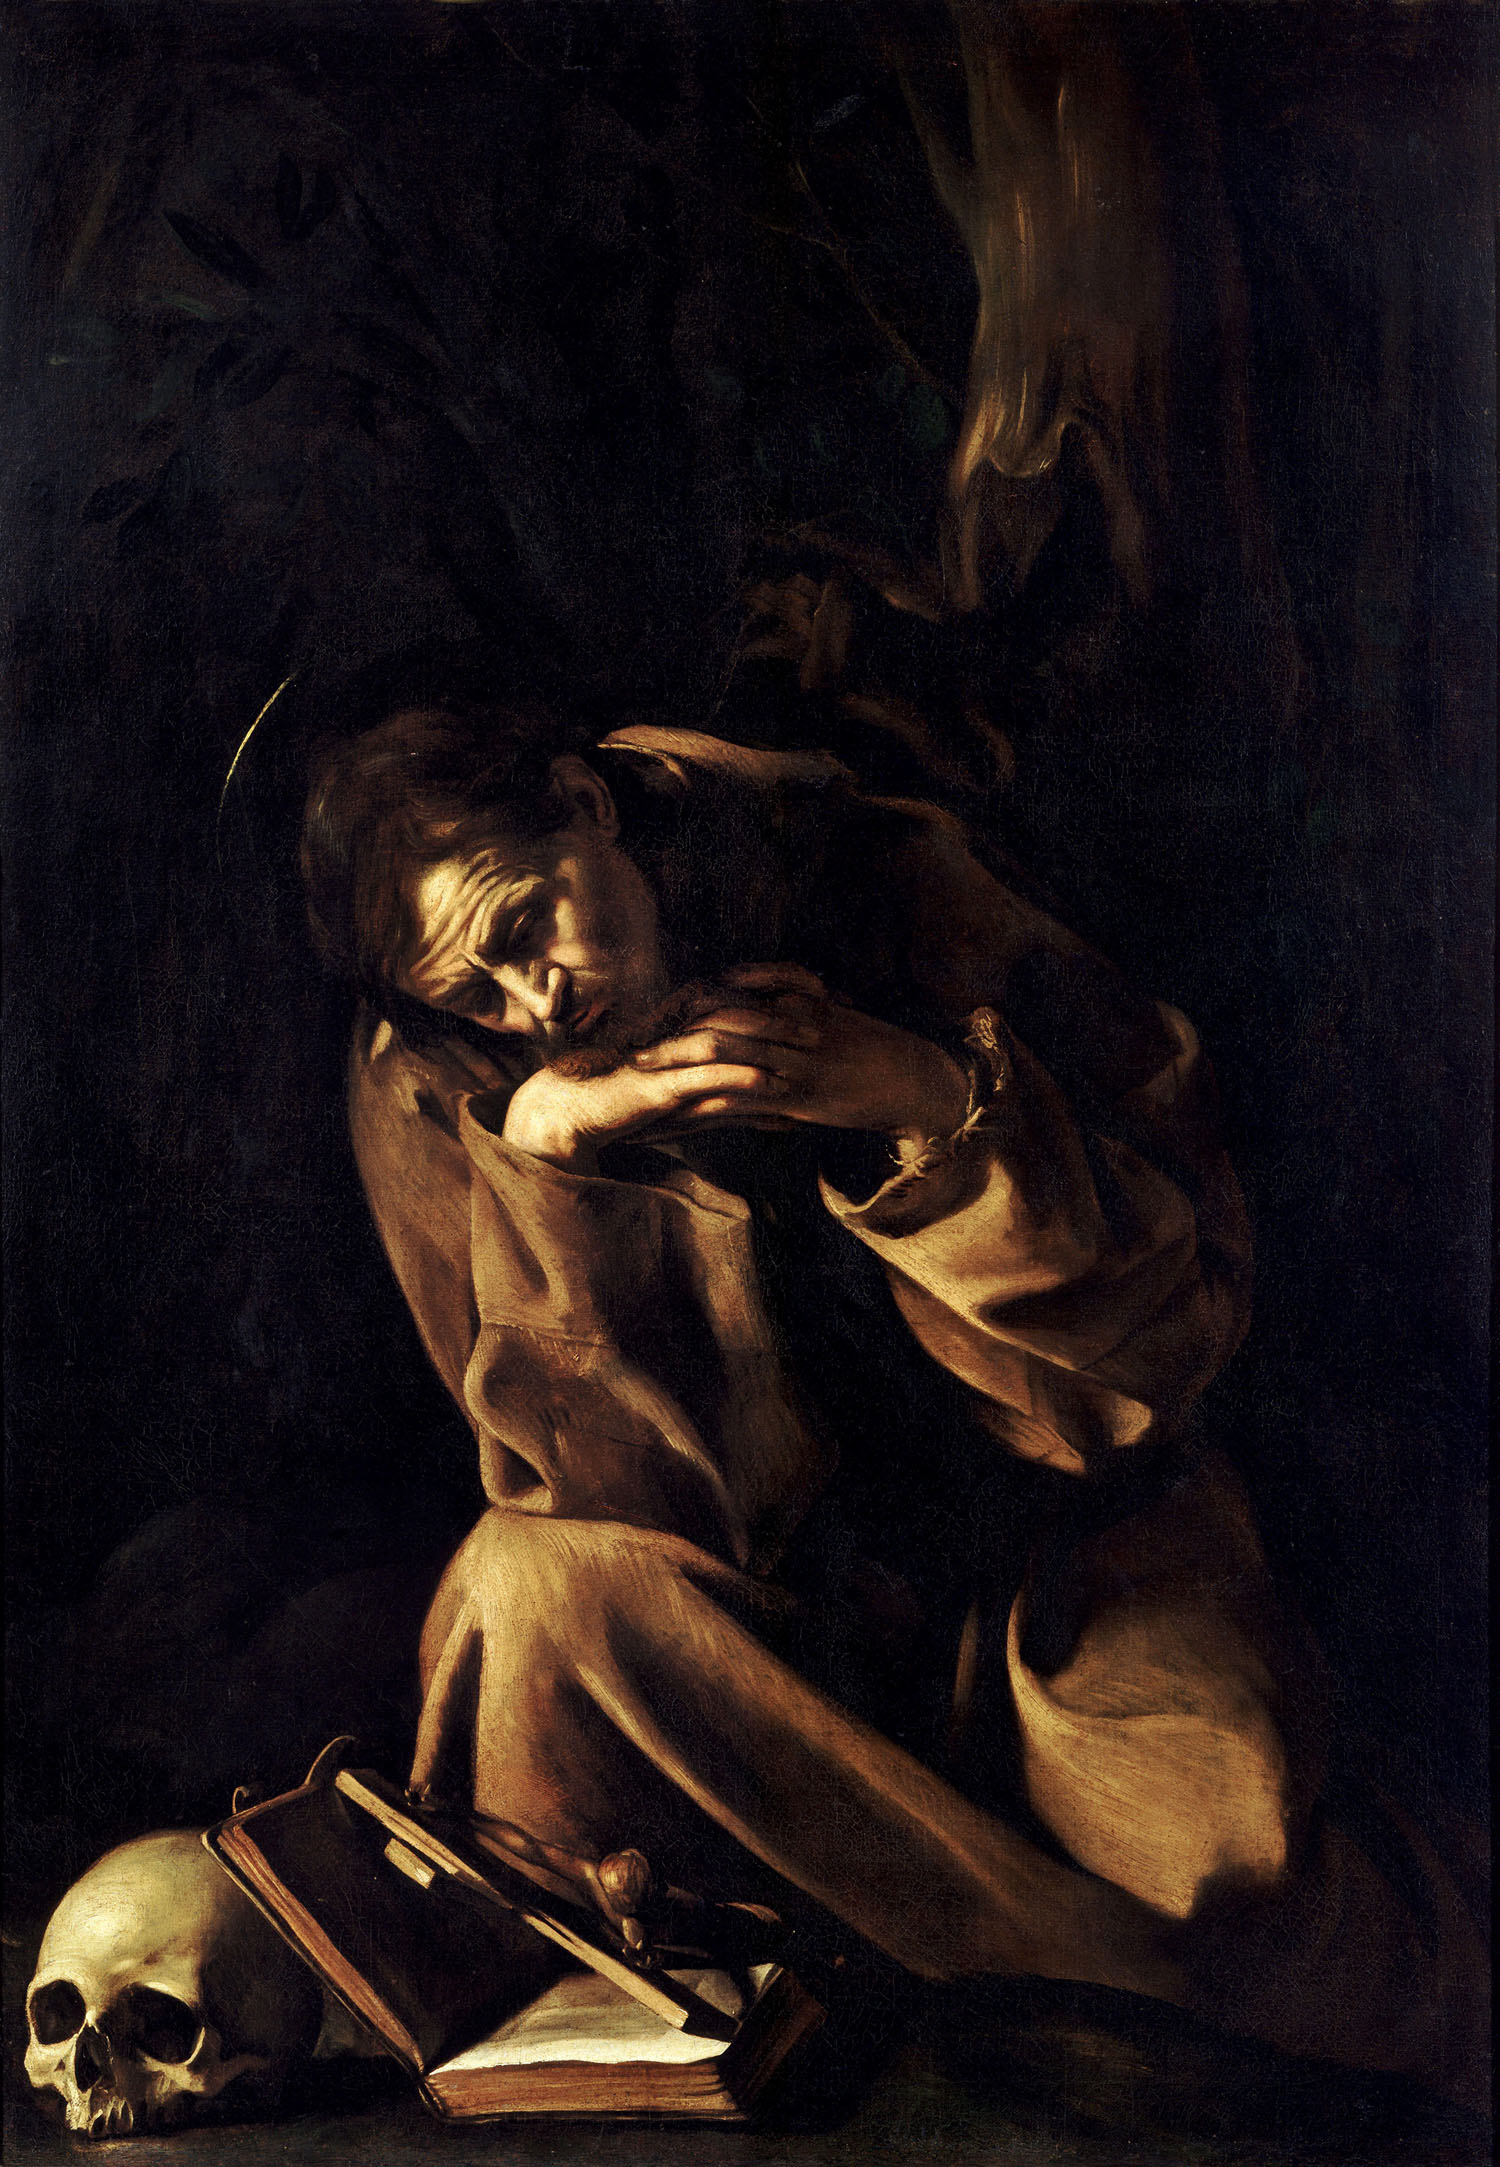 Караваджо. Святой Франциск в раздумье. 1609.